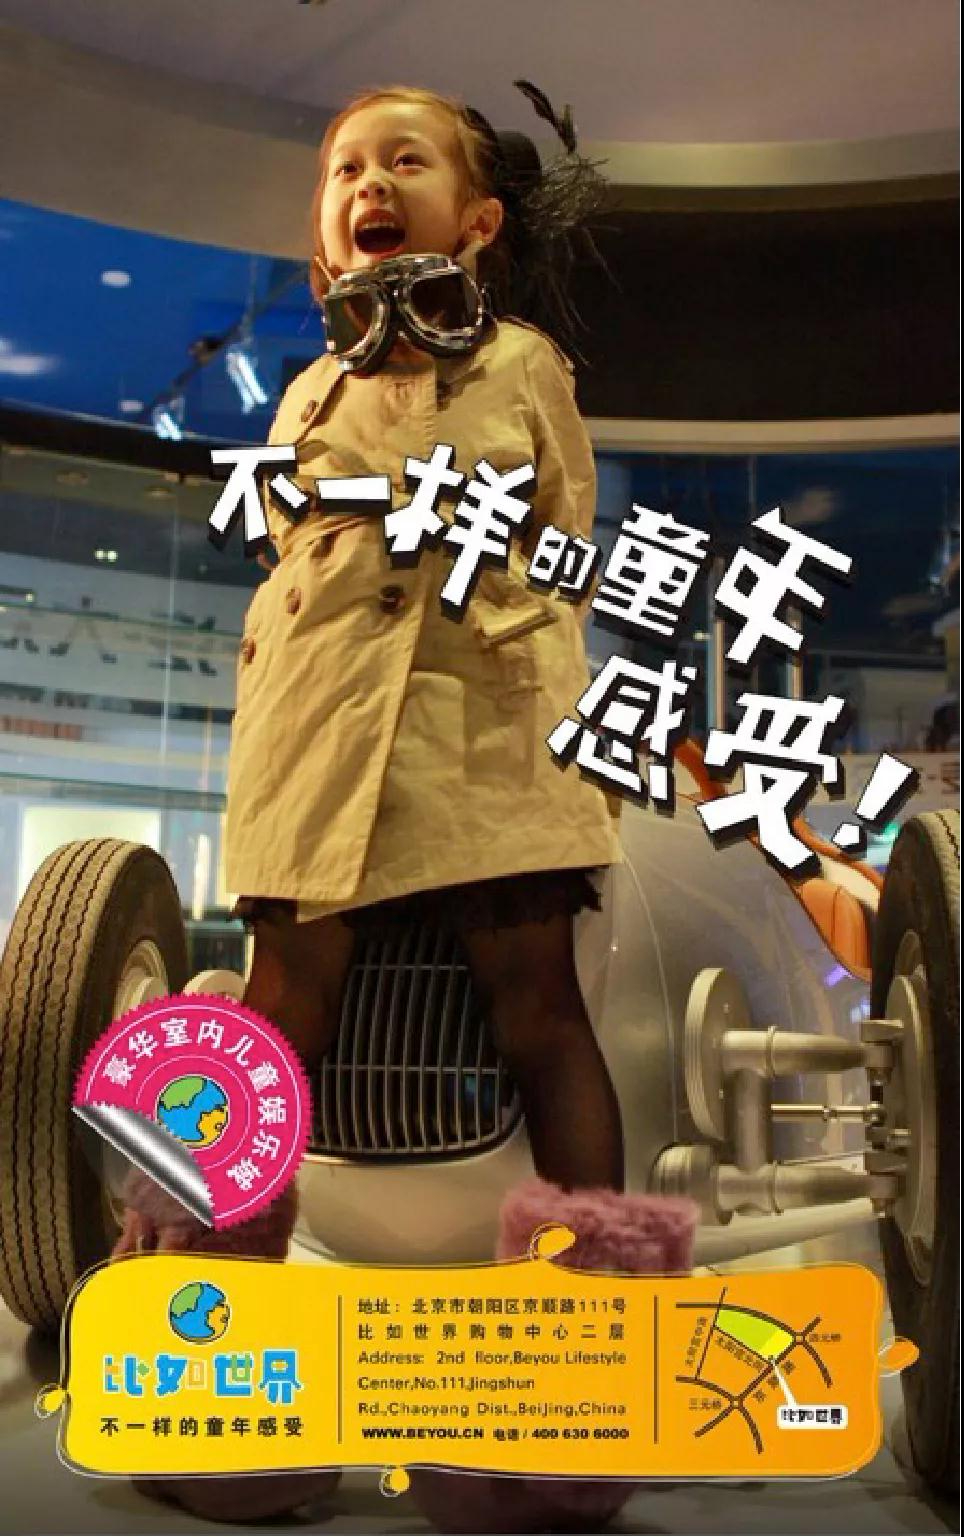 【会员风采】北京文投会副会长单位道达广告——在儿童娱乐品牌建设上的探索与实践